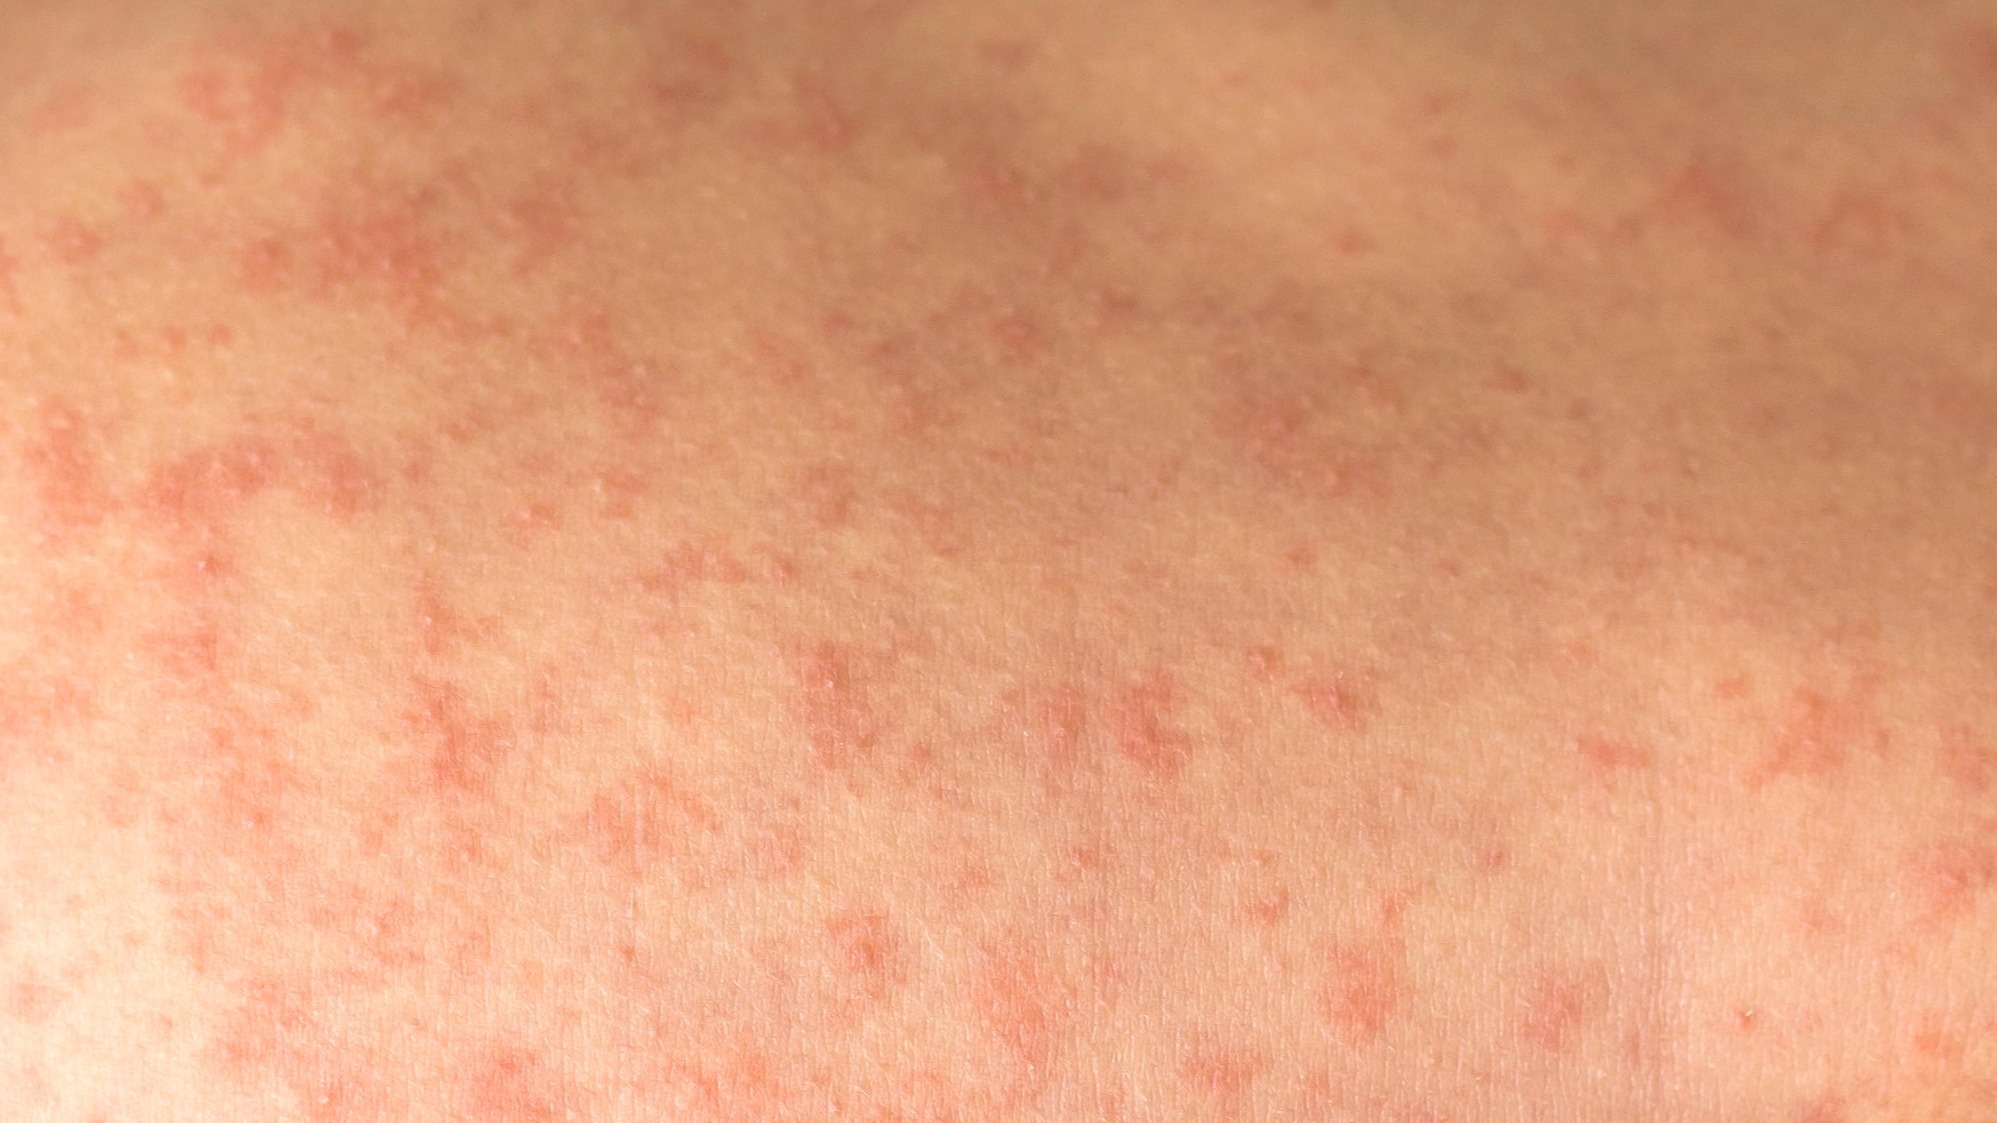 Image of measles rash